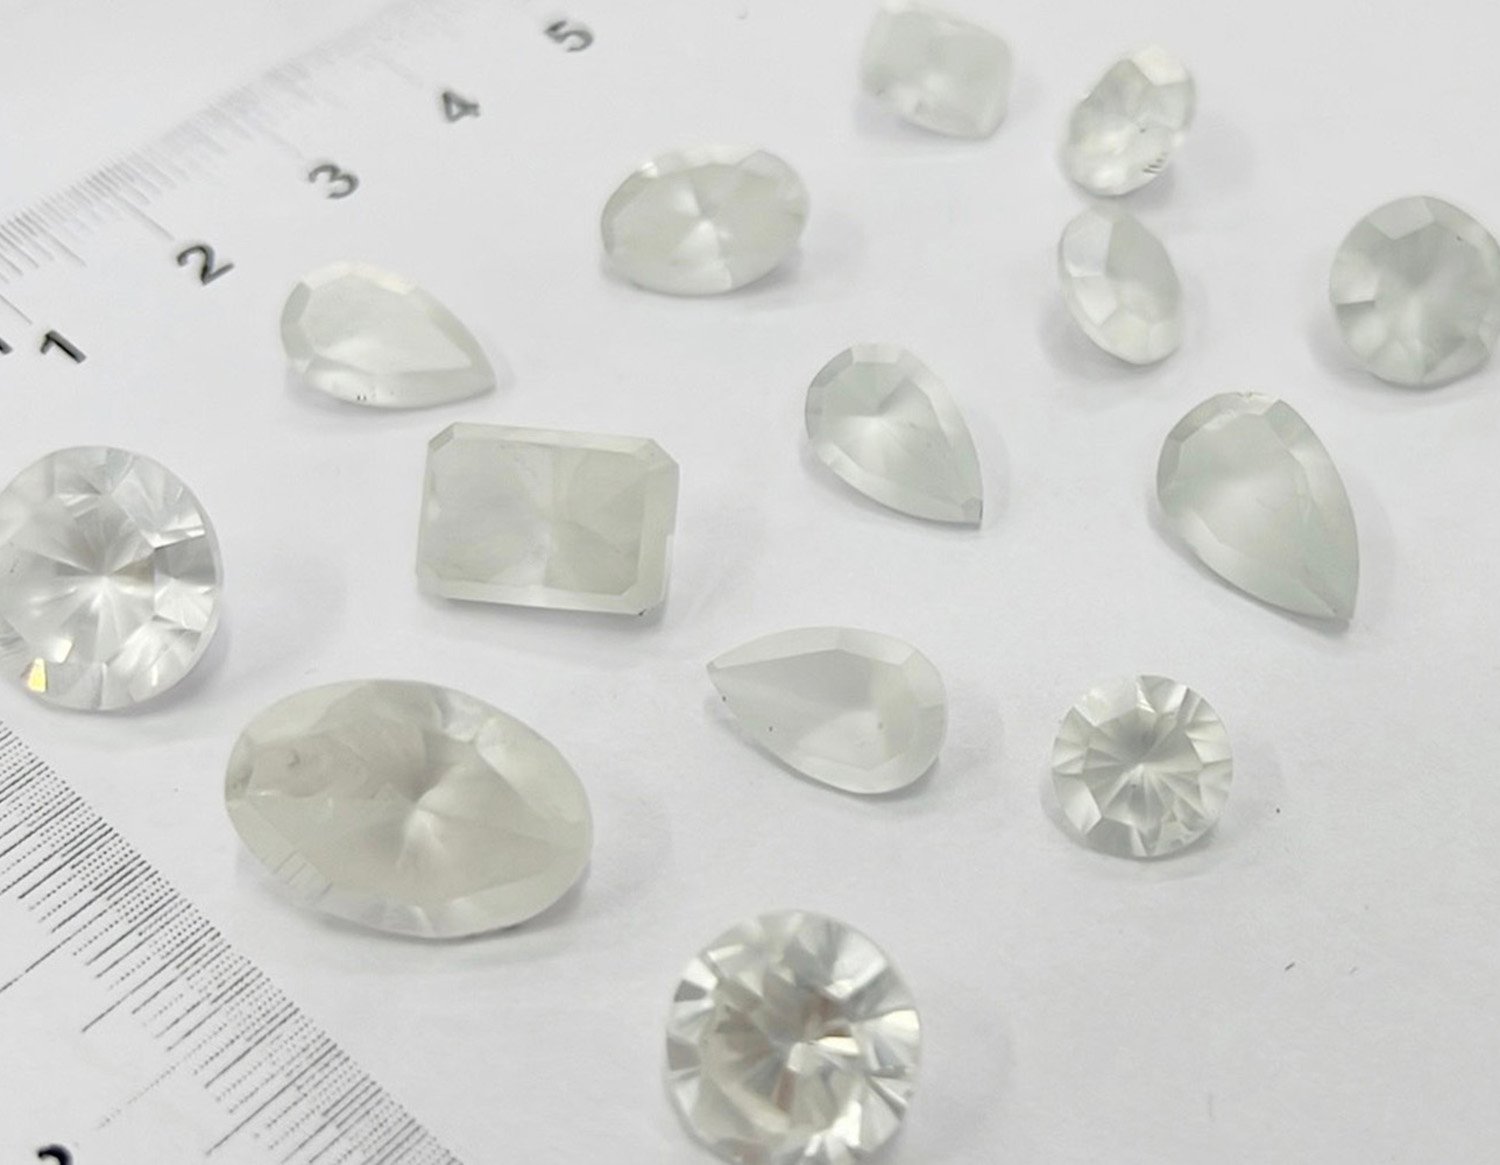 Lab Grown Diamonds (LGD) / Single Crystal Diamonds (SCD)